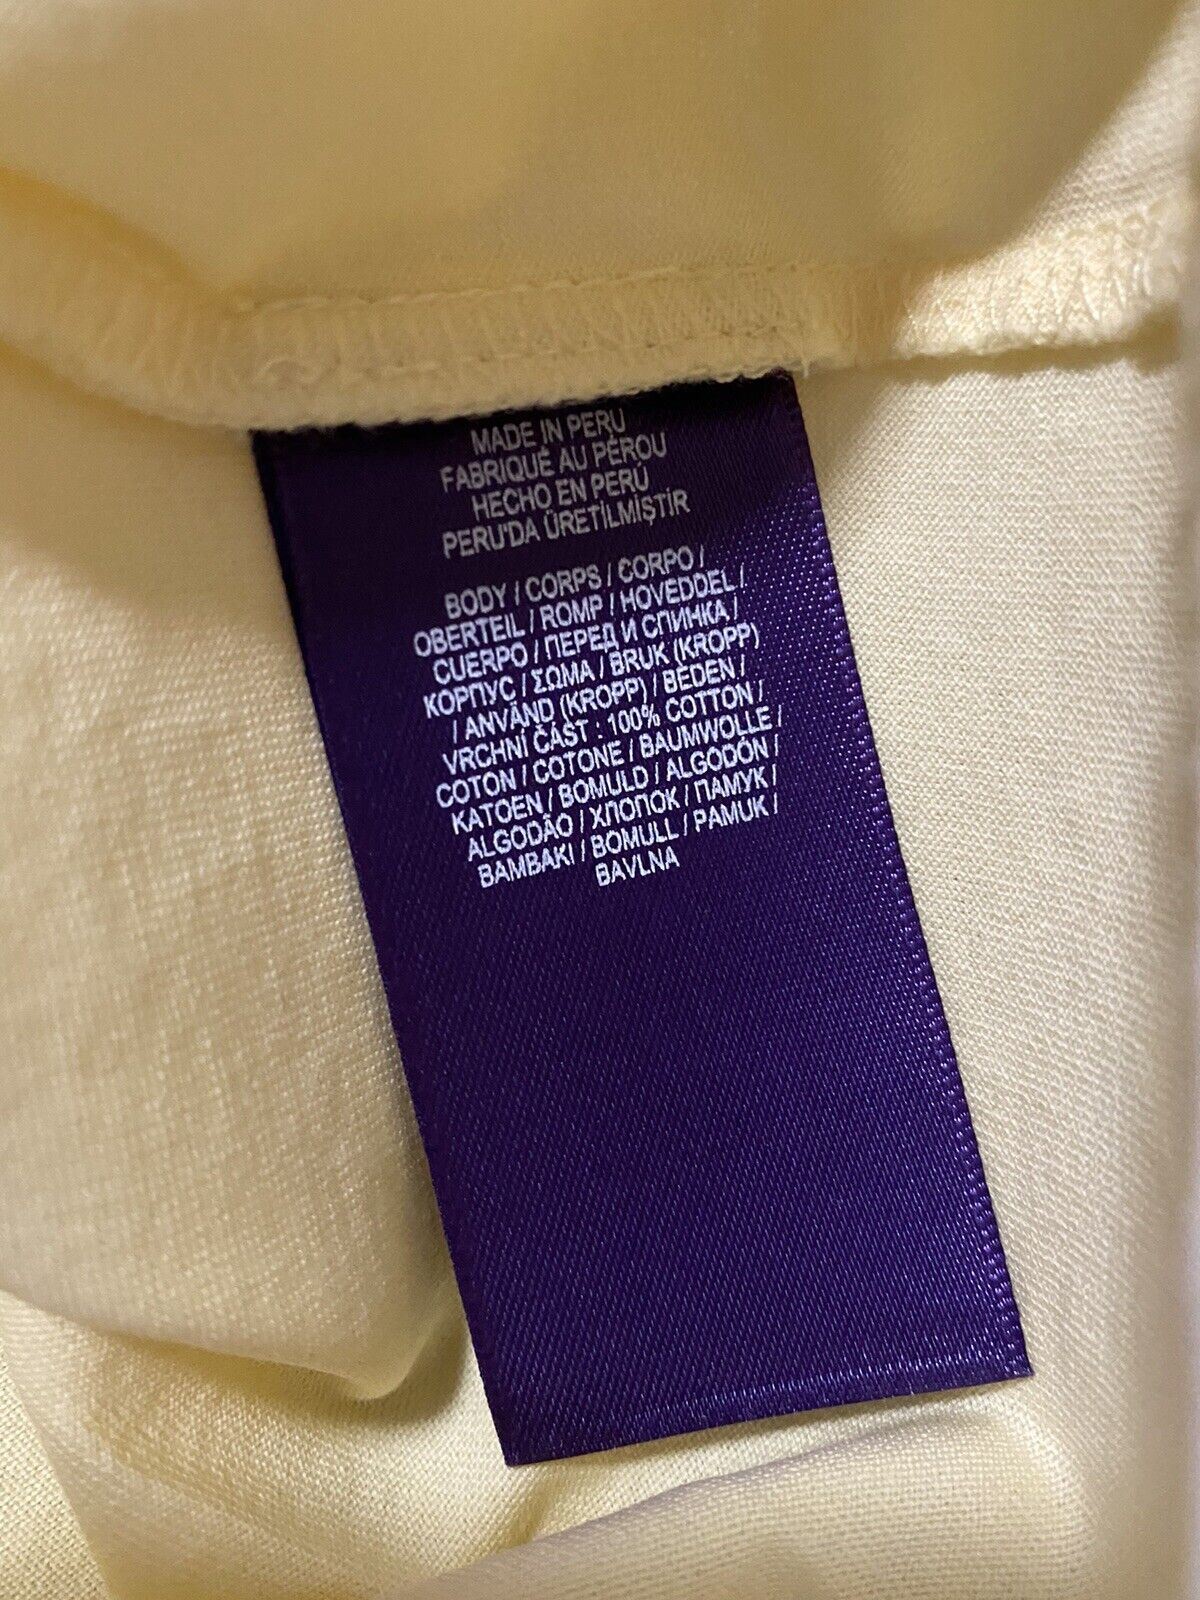 Neu mit Etikett: Ralph Lauren Purple Label Herren-Baumwoll-T-Shirt, Gelb, S, Italien